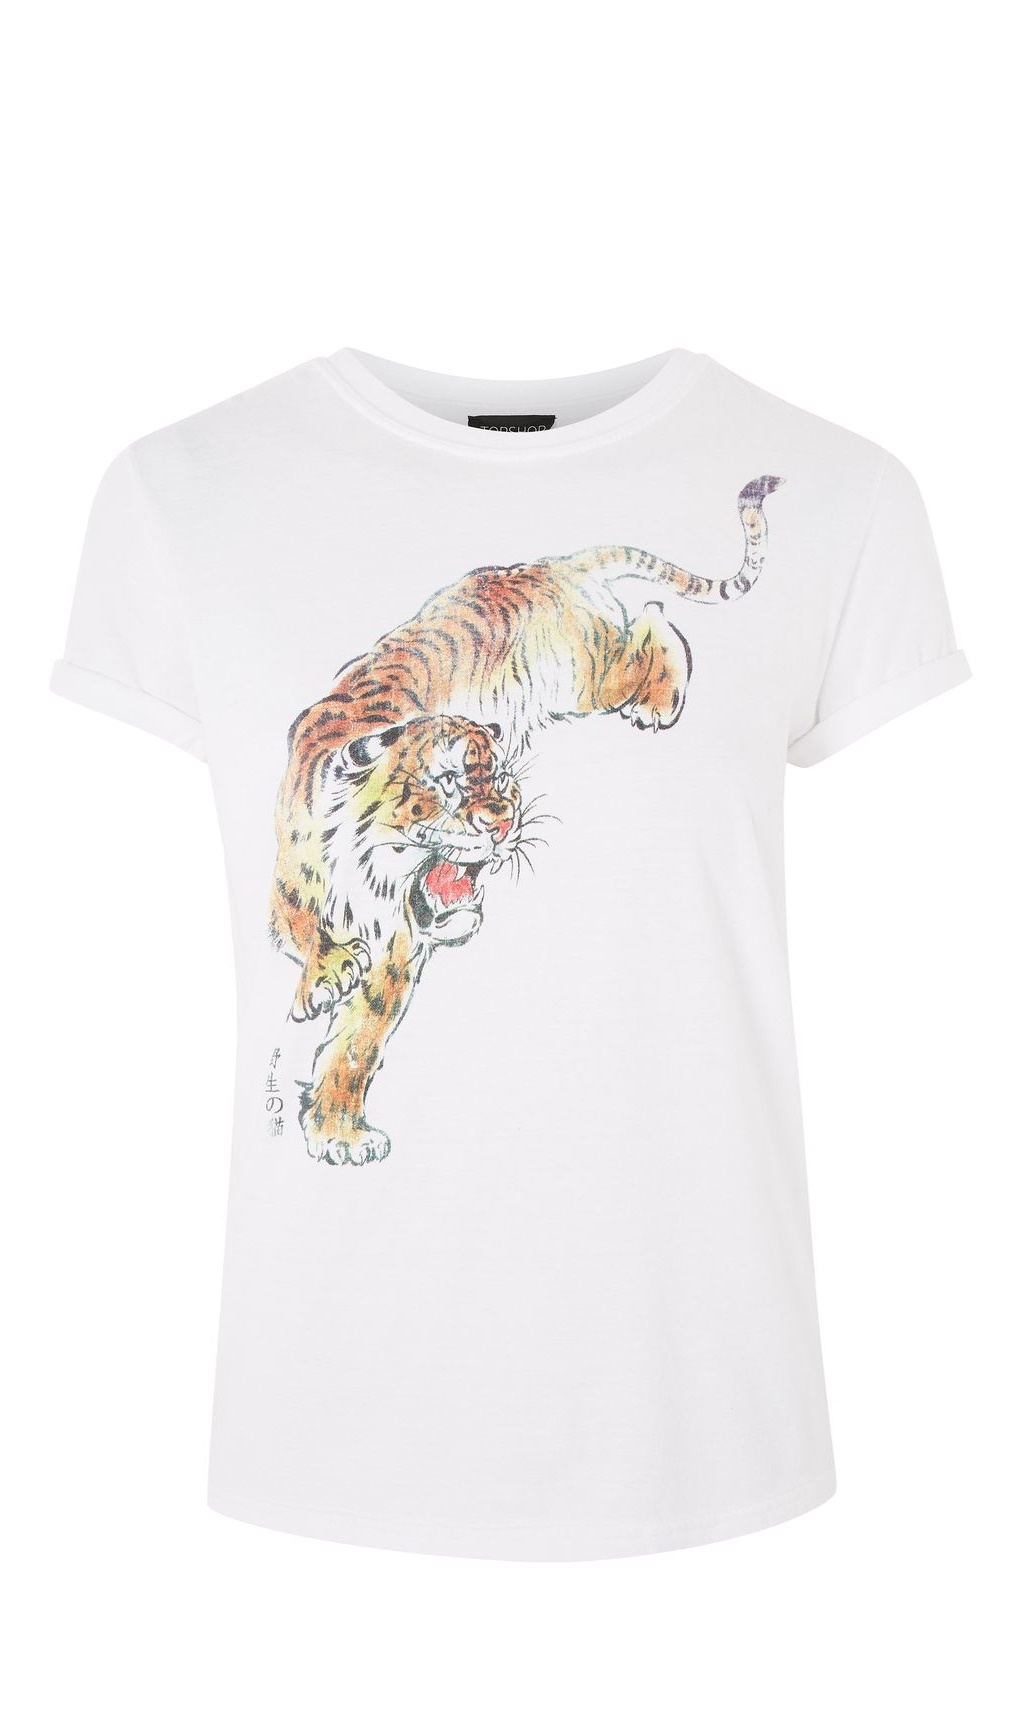 T-shirt com tigre, Topshop, €18